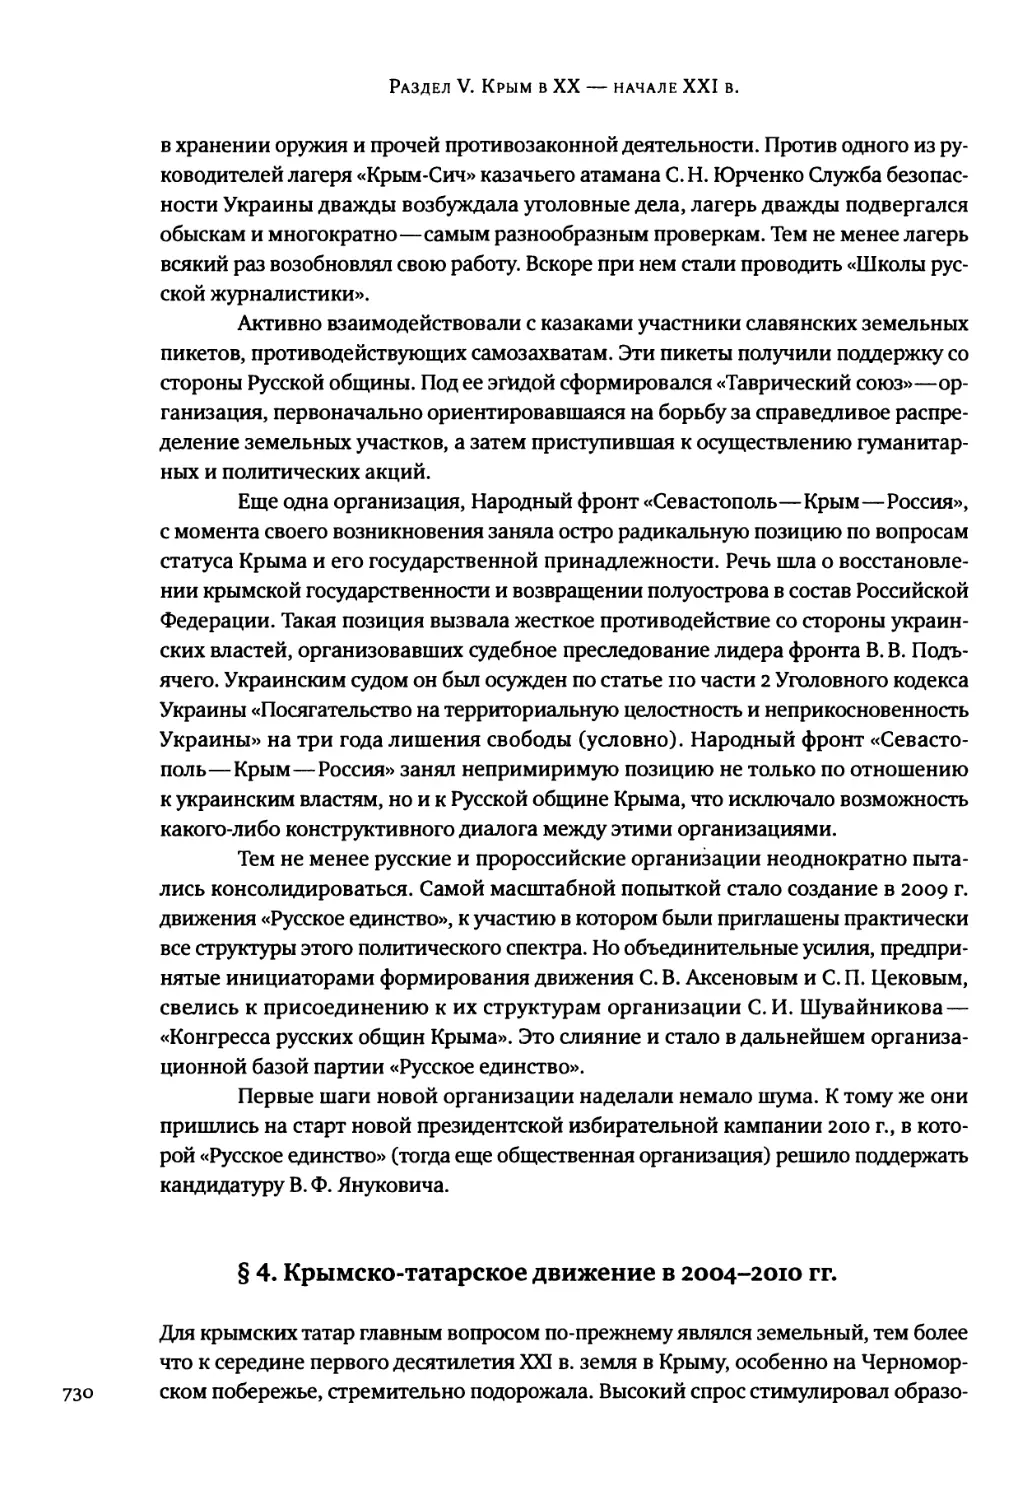 § 4. Крымско-татарское движение в 2004-2010 гг